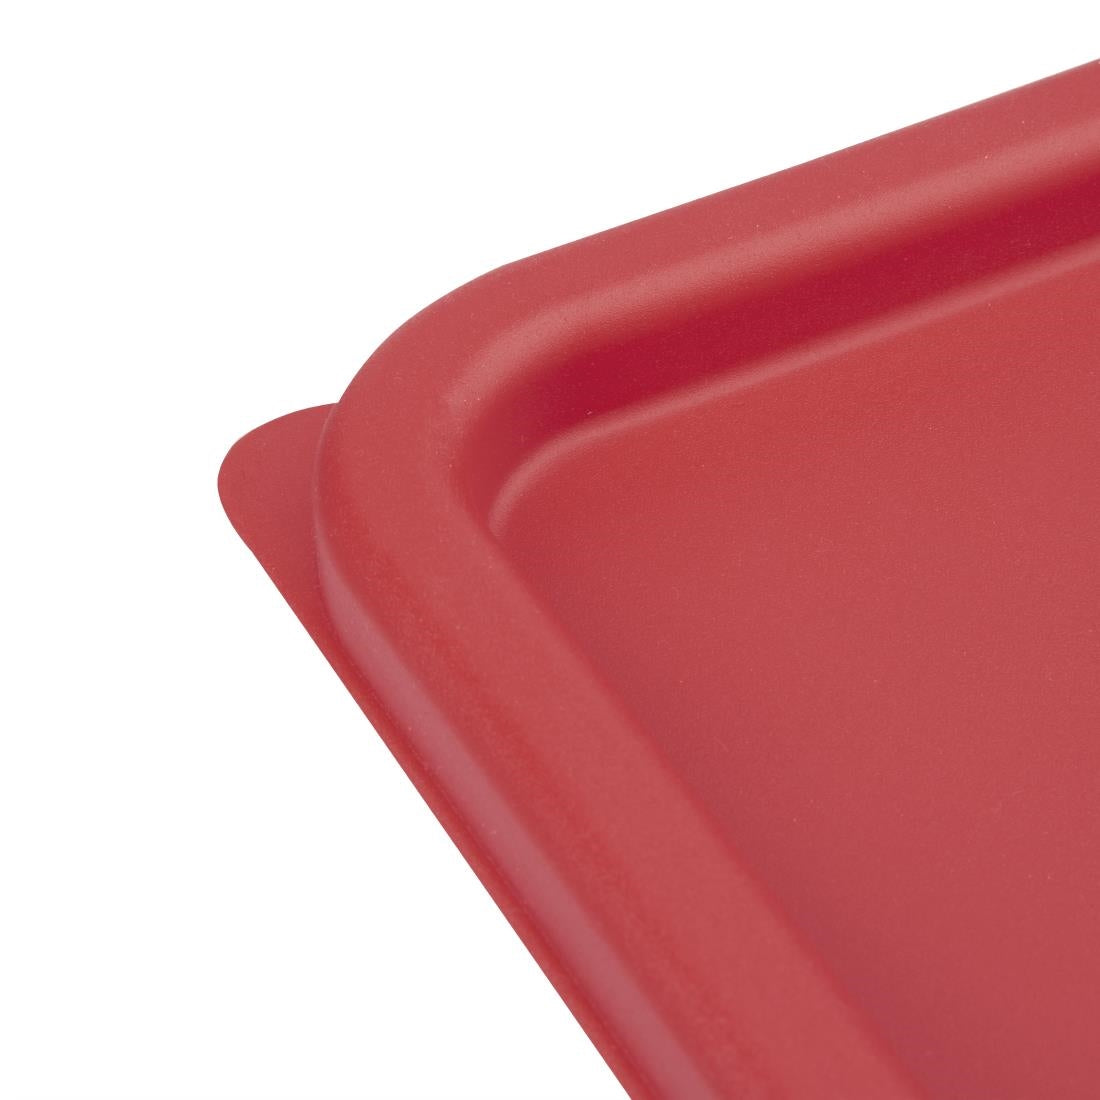 Vogue Square Food Storage Container Lid Red Medium